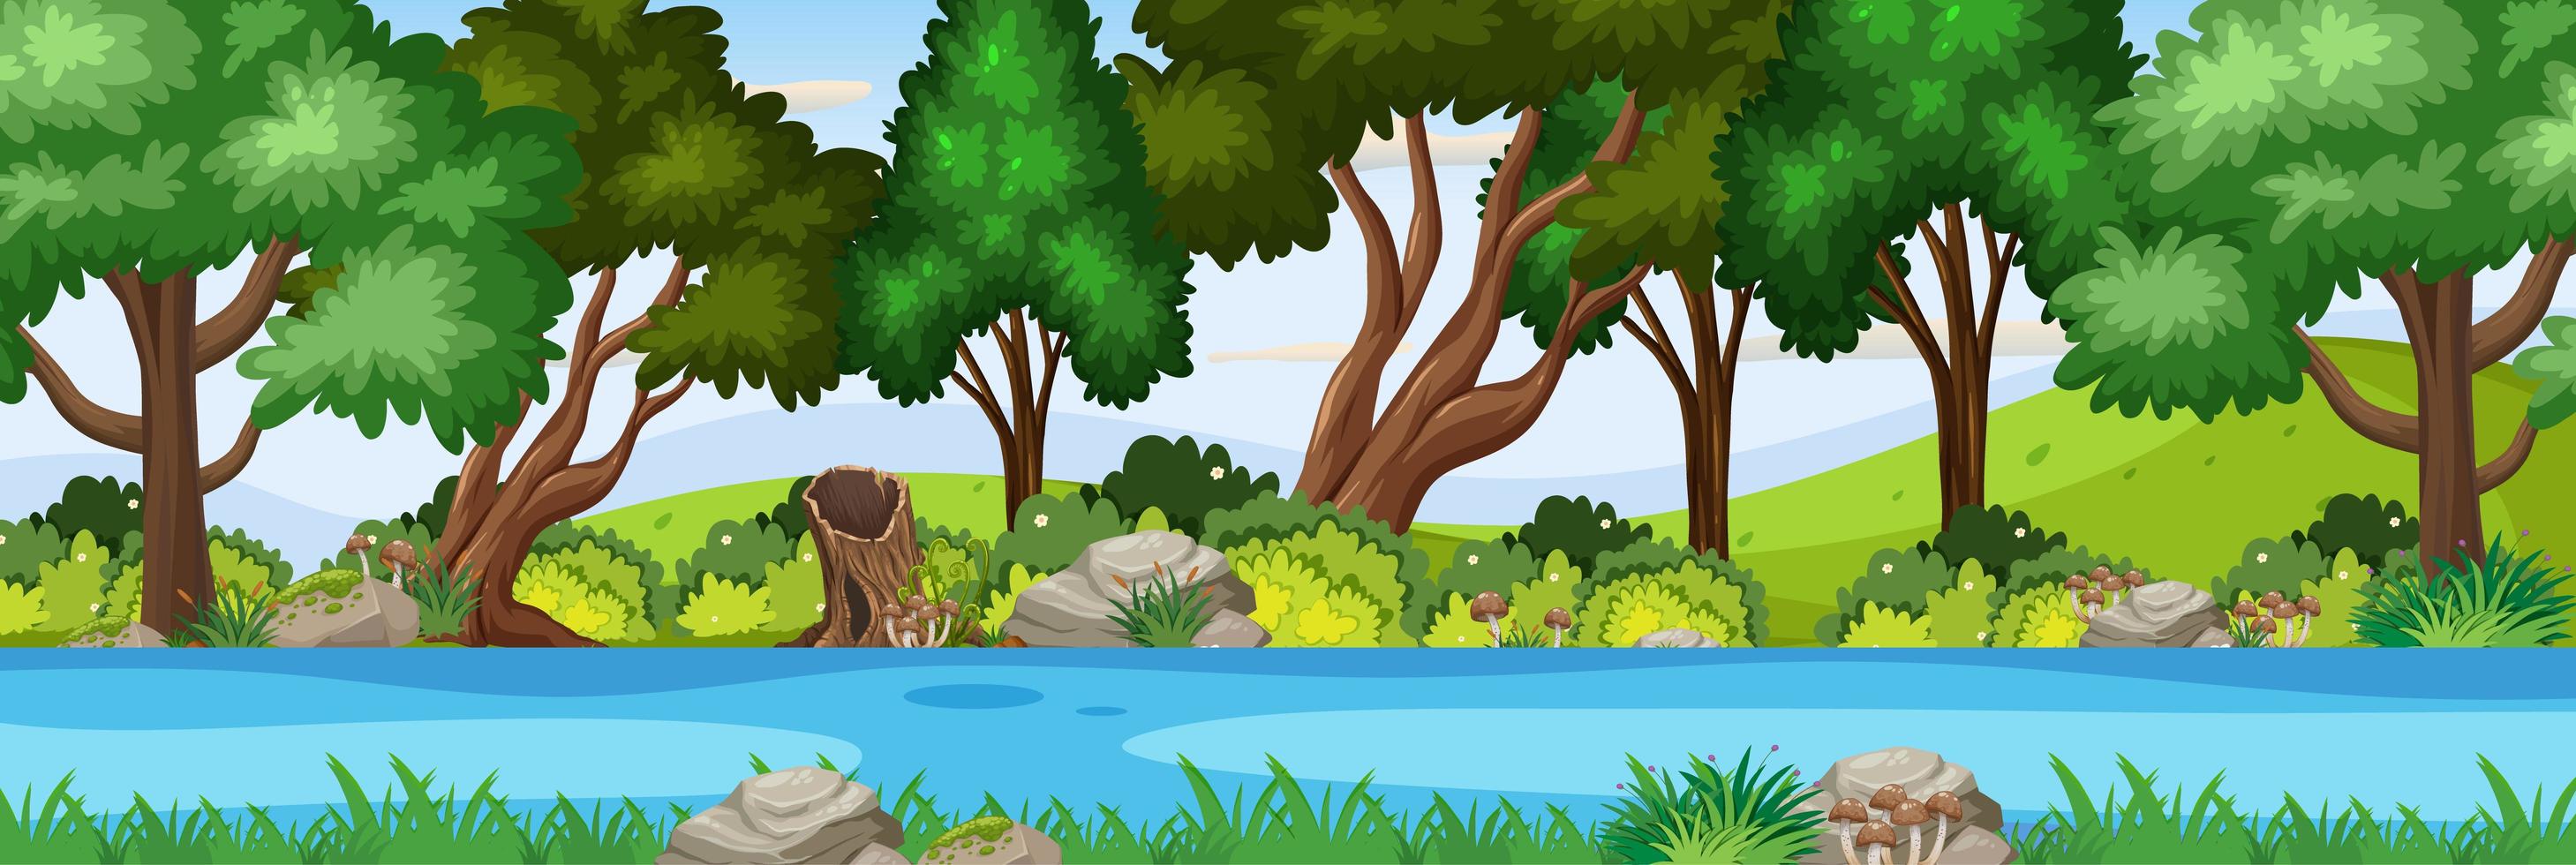 scène de rivière dans la scène horizontale de la forêt vecteur